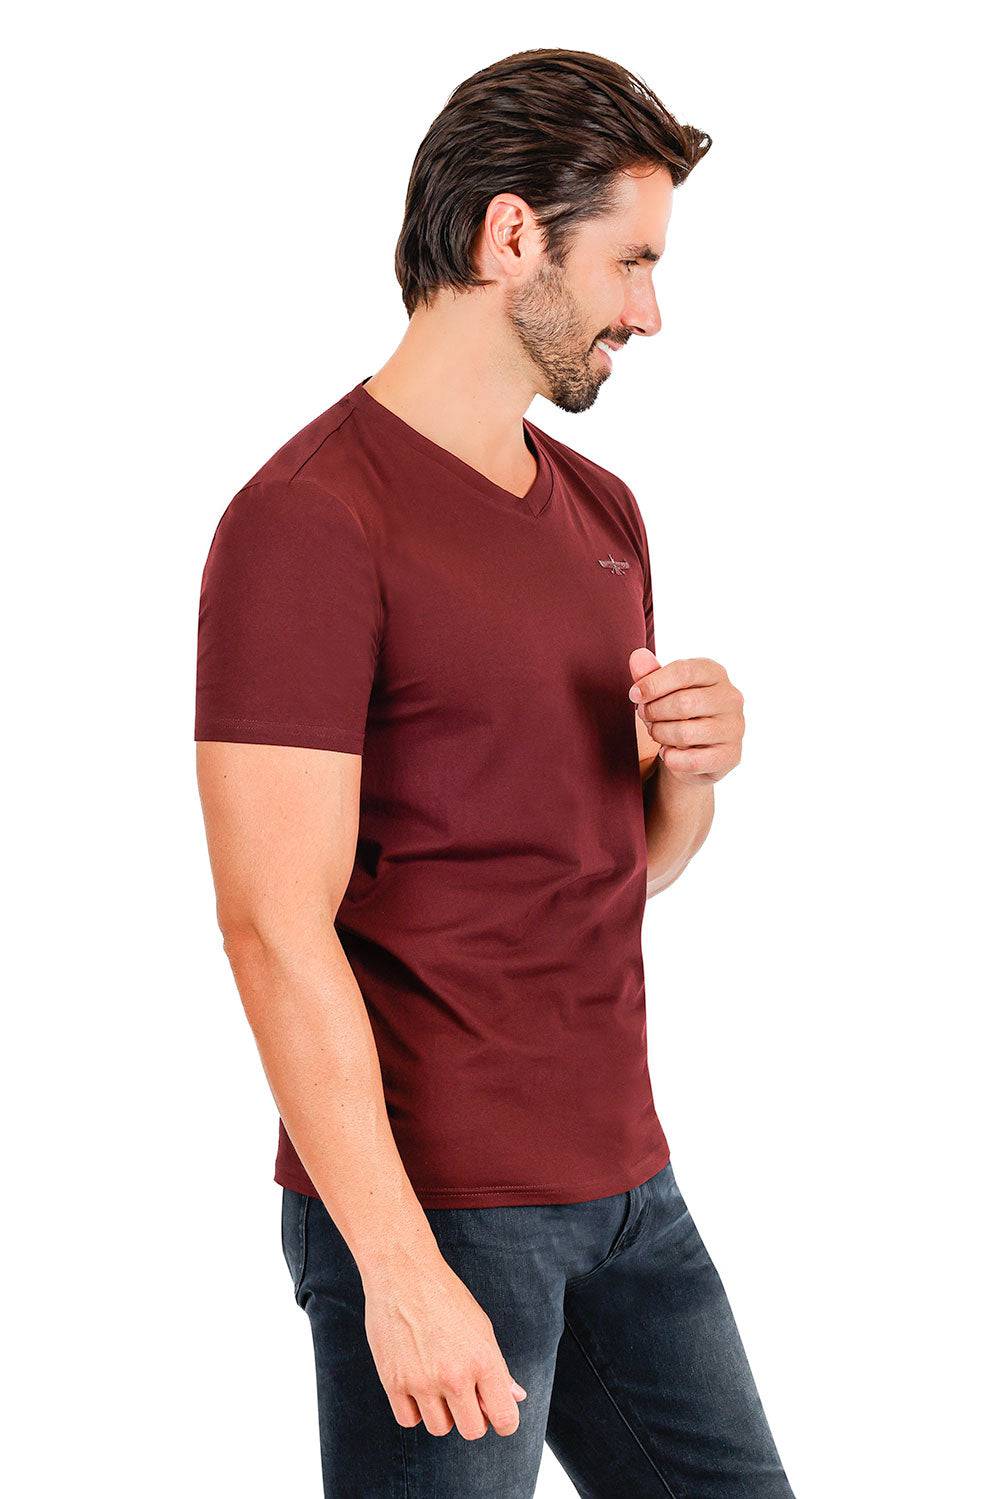 BARABAS Men's Basic Solid Color Premium V-neck T-shirts TV216  Brown 